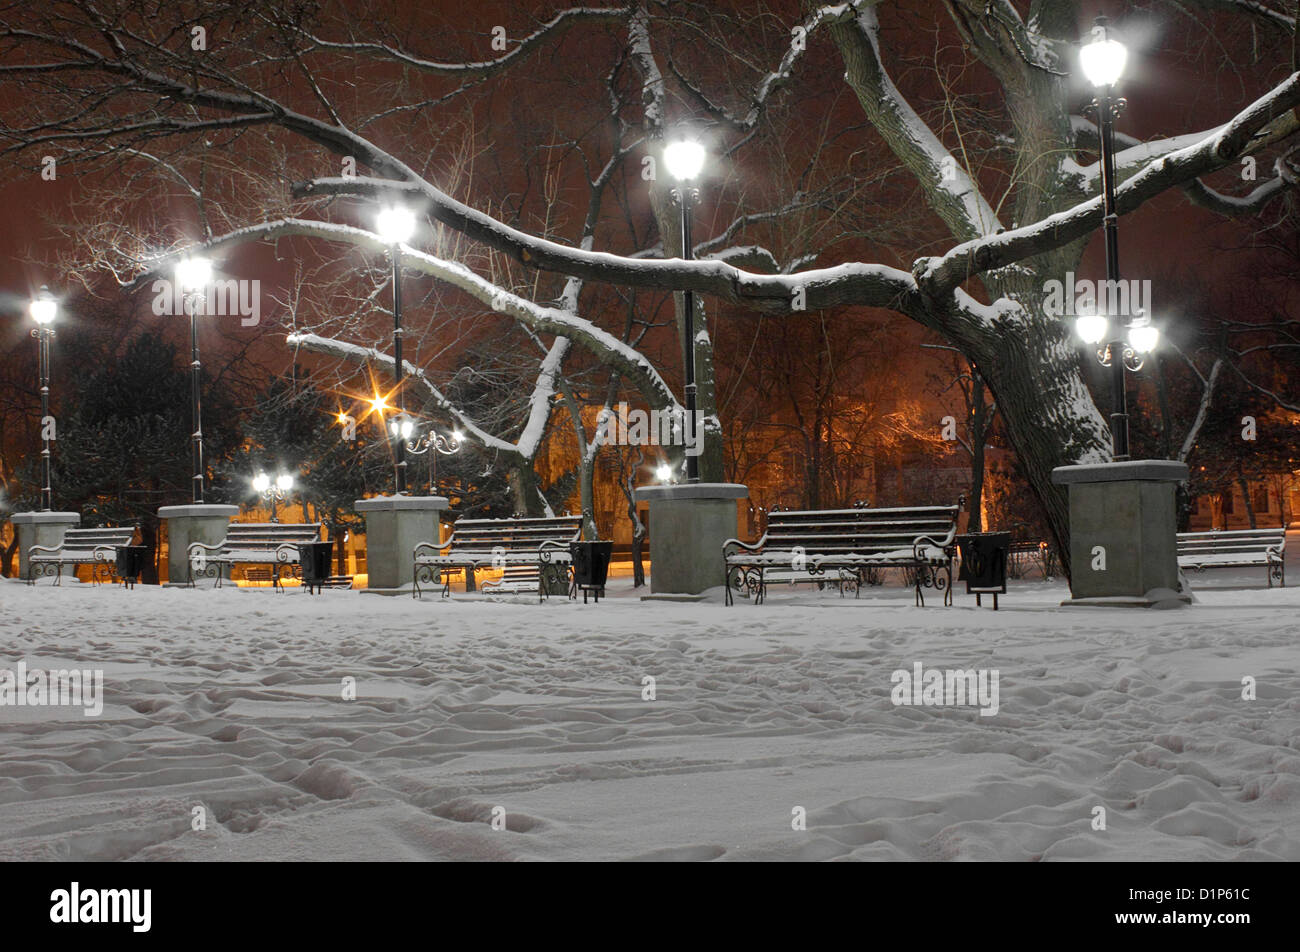 Les lanternes dans la rue au parc la nuit en hiver Banque D'Images